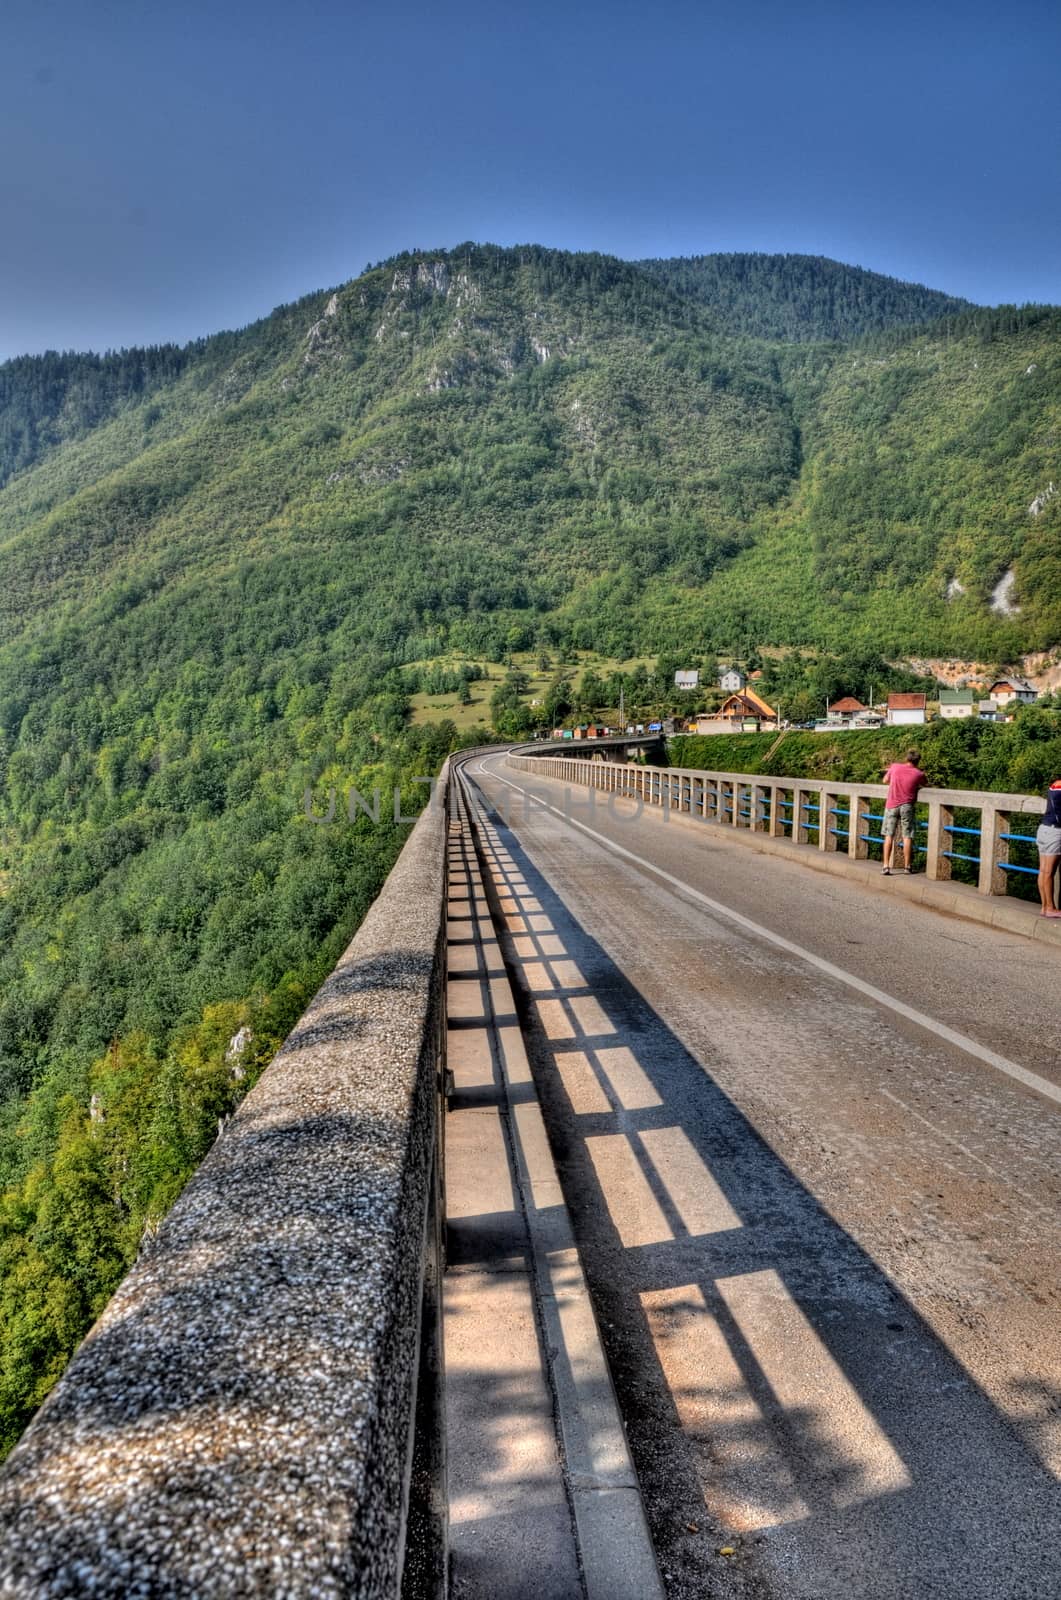 Tara bridge in Monte Negro